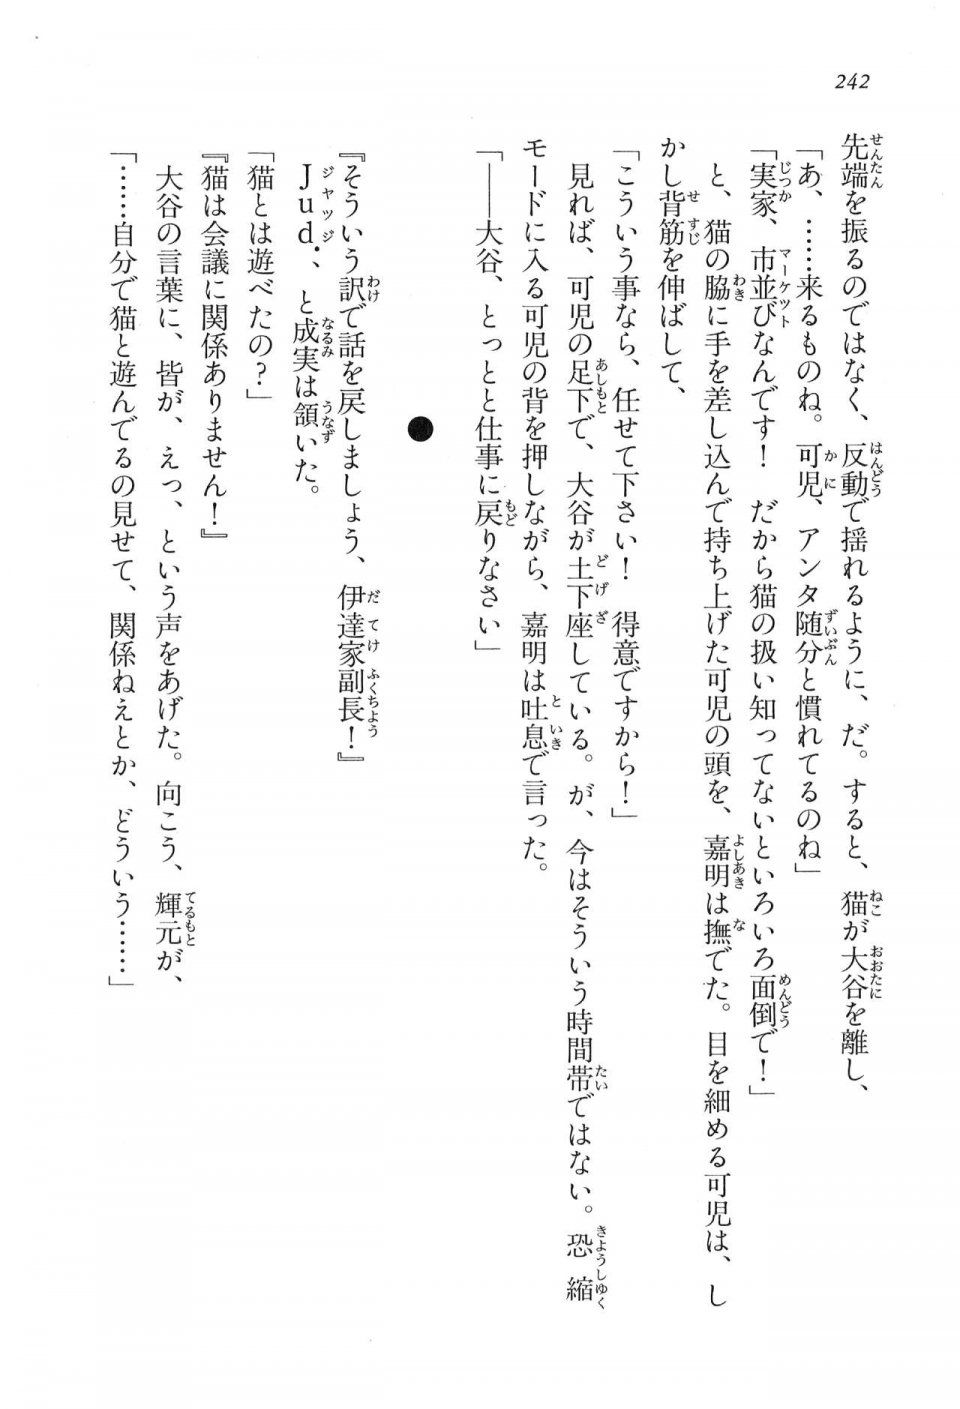 Kyoukai Senjou no Horizon LN Vol 16(7A) - Photo #242